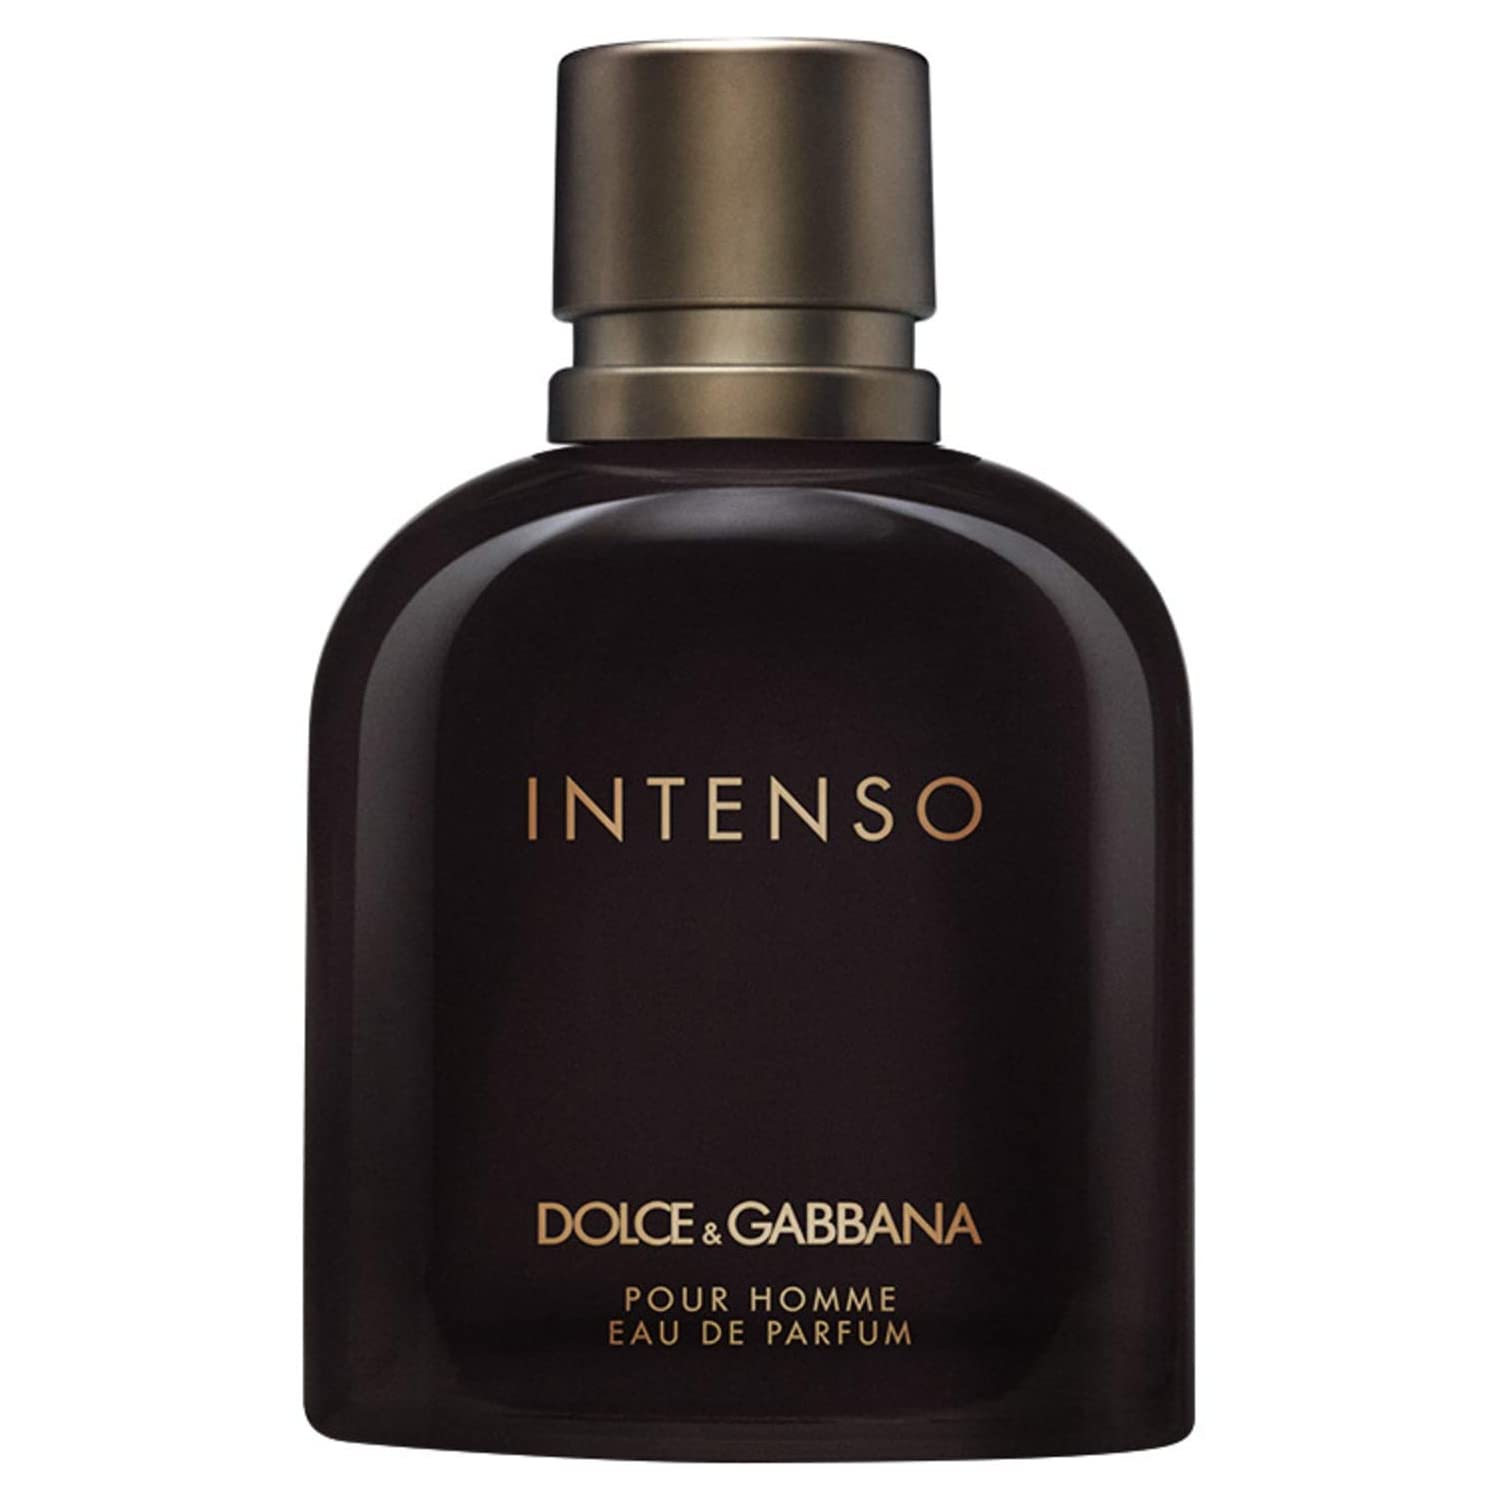 Dolce & Gabbana Intenso Pour Homme Eau De Parfum (125 ml) Dolce & Gabbana